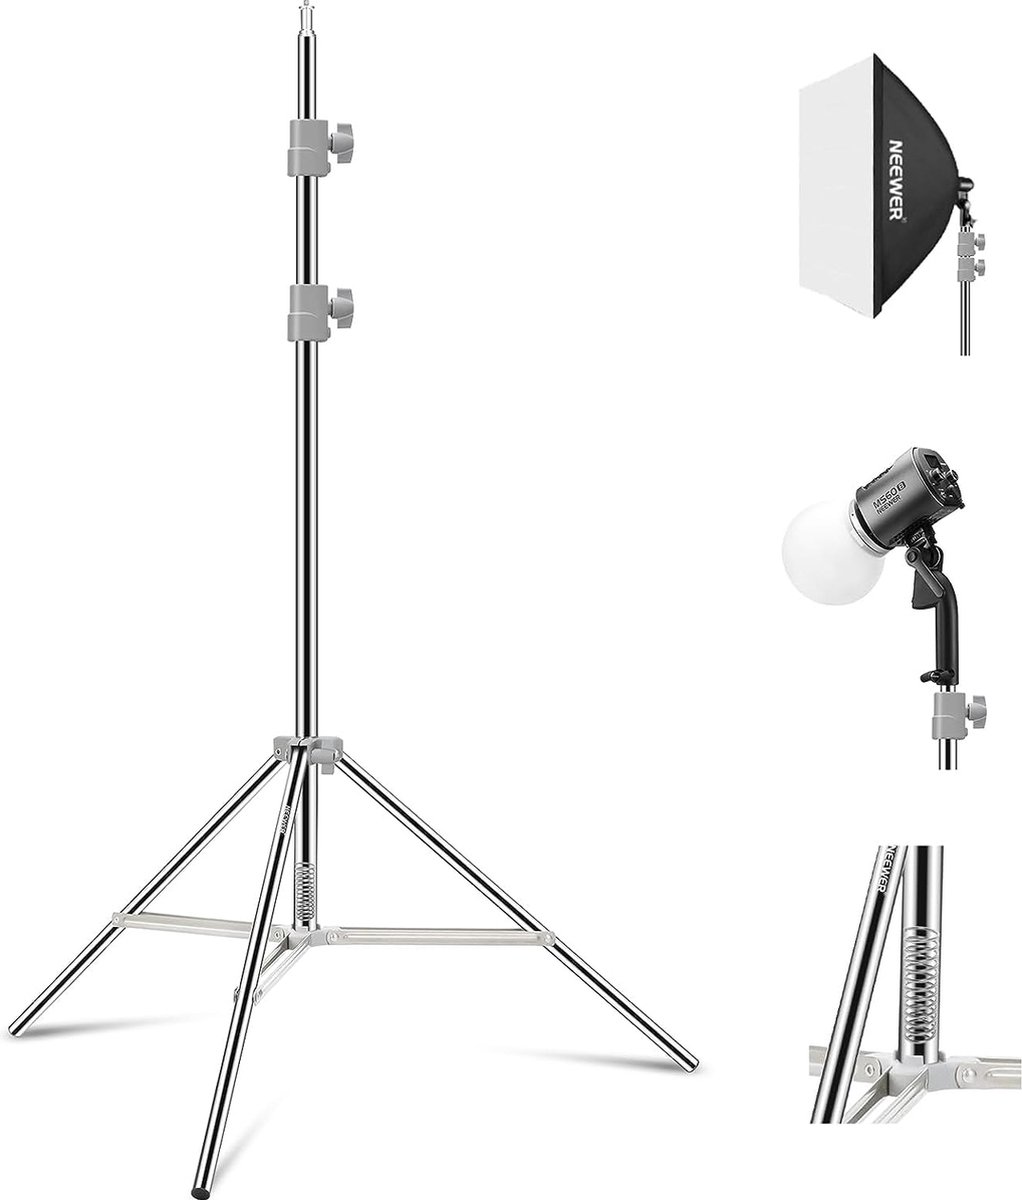 Neewer® - Fotostandaard - Roestvrij Staal met Veerbelasting - Opvouwbare Fotografie Statiefstandaard met Versterkte Buisverbindingen voor Strobe Softbox LED Ringlicht - Max Belasting 13.5 kg - Neewer®